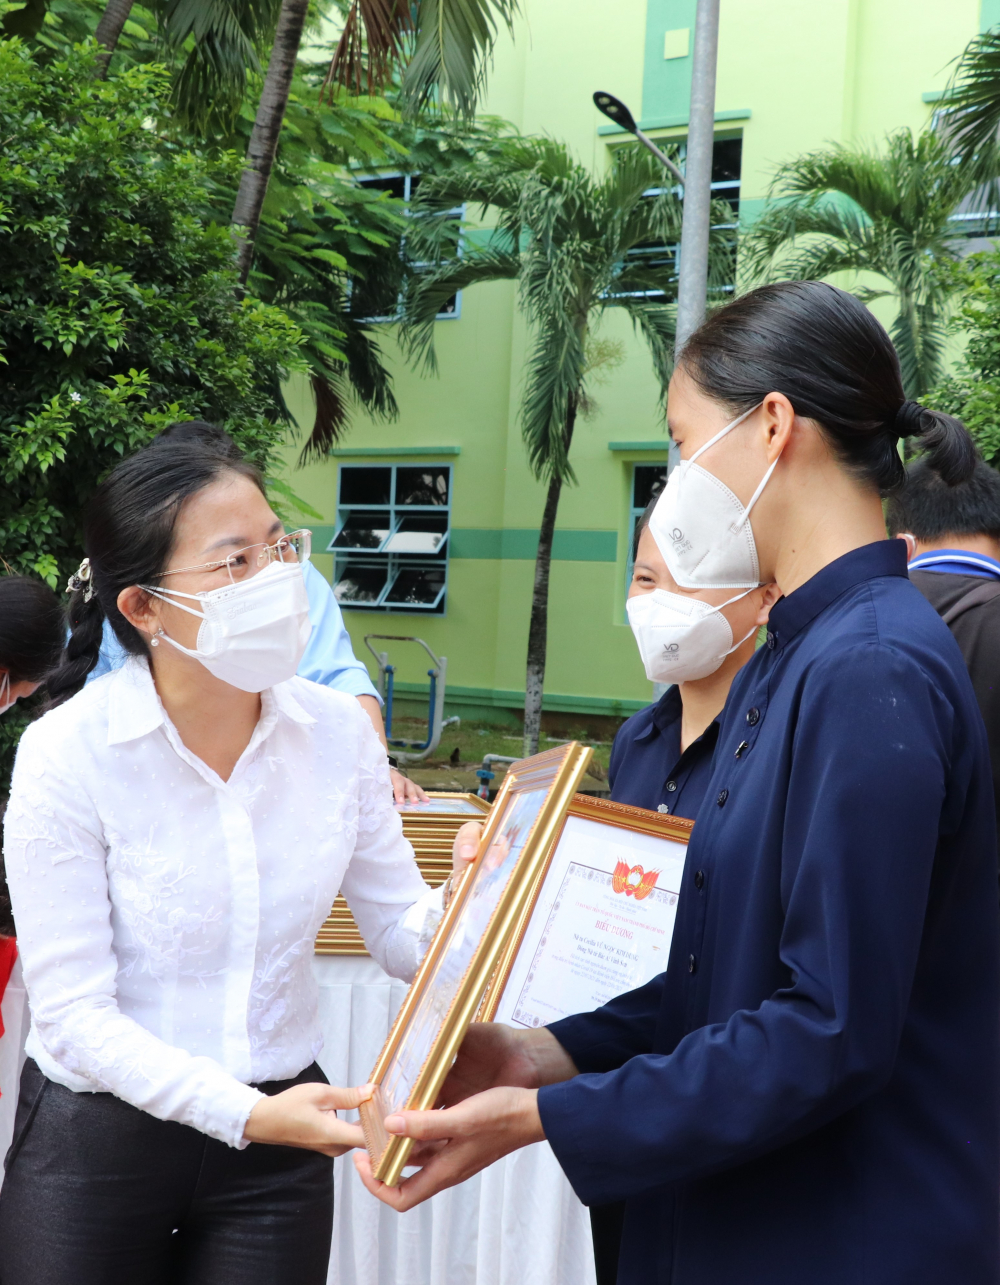 Phó Chủ tịch Ủy ban MTTQ Việt Nam TPHCM Phan Kiều Thanh Hương trân trọng ghi nhận và cảm ơn sự tham gia hỗ trợ của các tình nguyện viên tôn giáo trong hơn một tháng qua trên tinh thần trách nhiệm, chia sẻ, vượt qua những khó khăn của cuộc sống thiếu nhiều tiện ích sinh hoạt để tình nguyện chăm sóc, động viên tinh thần cho bệnh nhân, giúp giảm tải rất nhiều cho các y bác sĩ, góp phần thực hiện mục tiêu của TP là giảm tỷ lệ tử vong, có thêm nhiều trường hợp hồi phục được xuất viện.